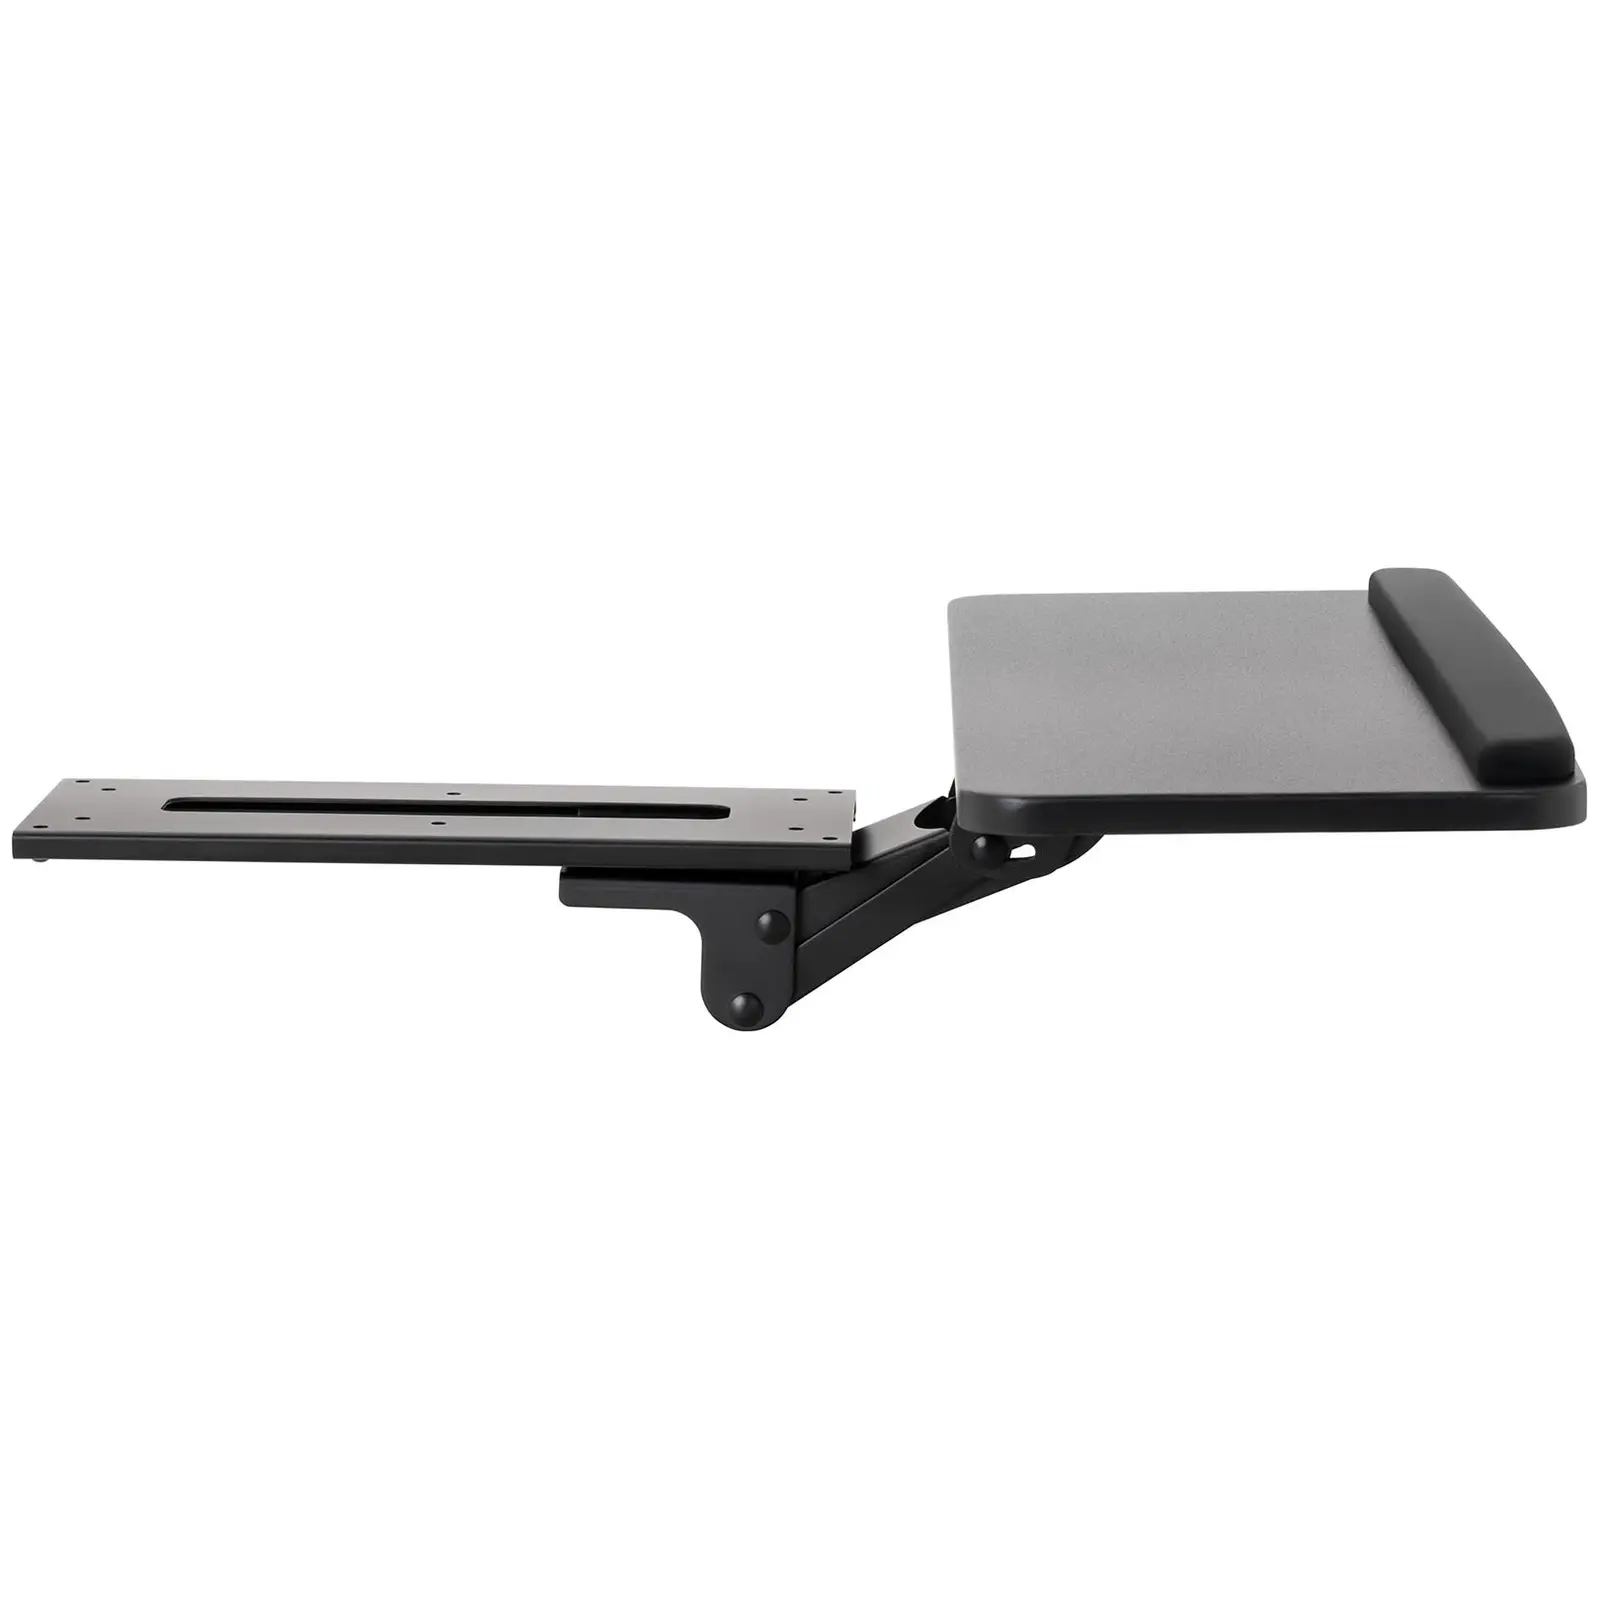 Suporte para teclado de mesa - ajustável - 635 x 246 mm